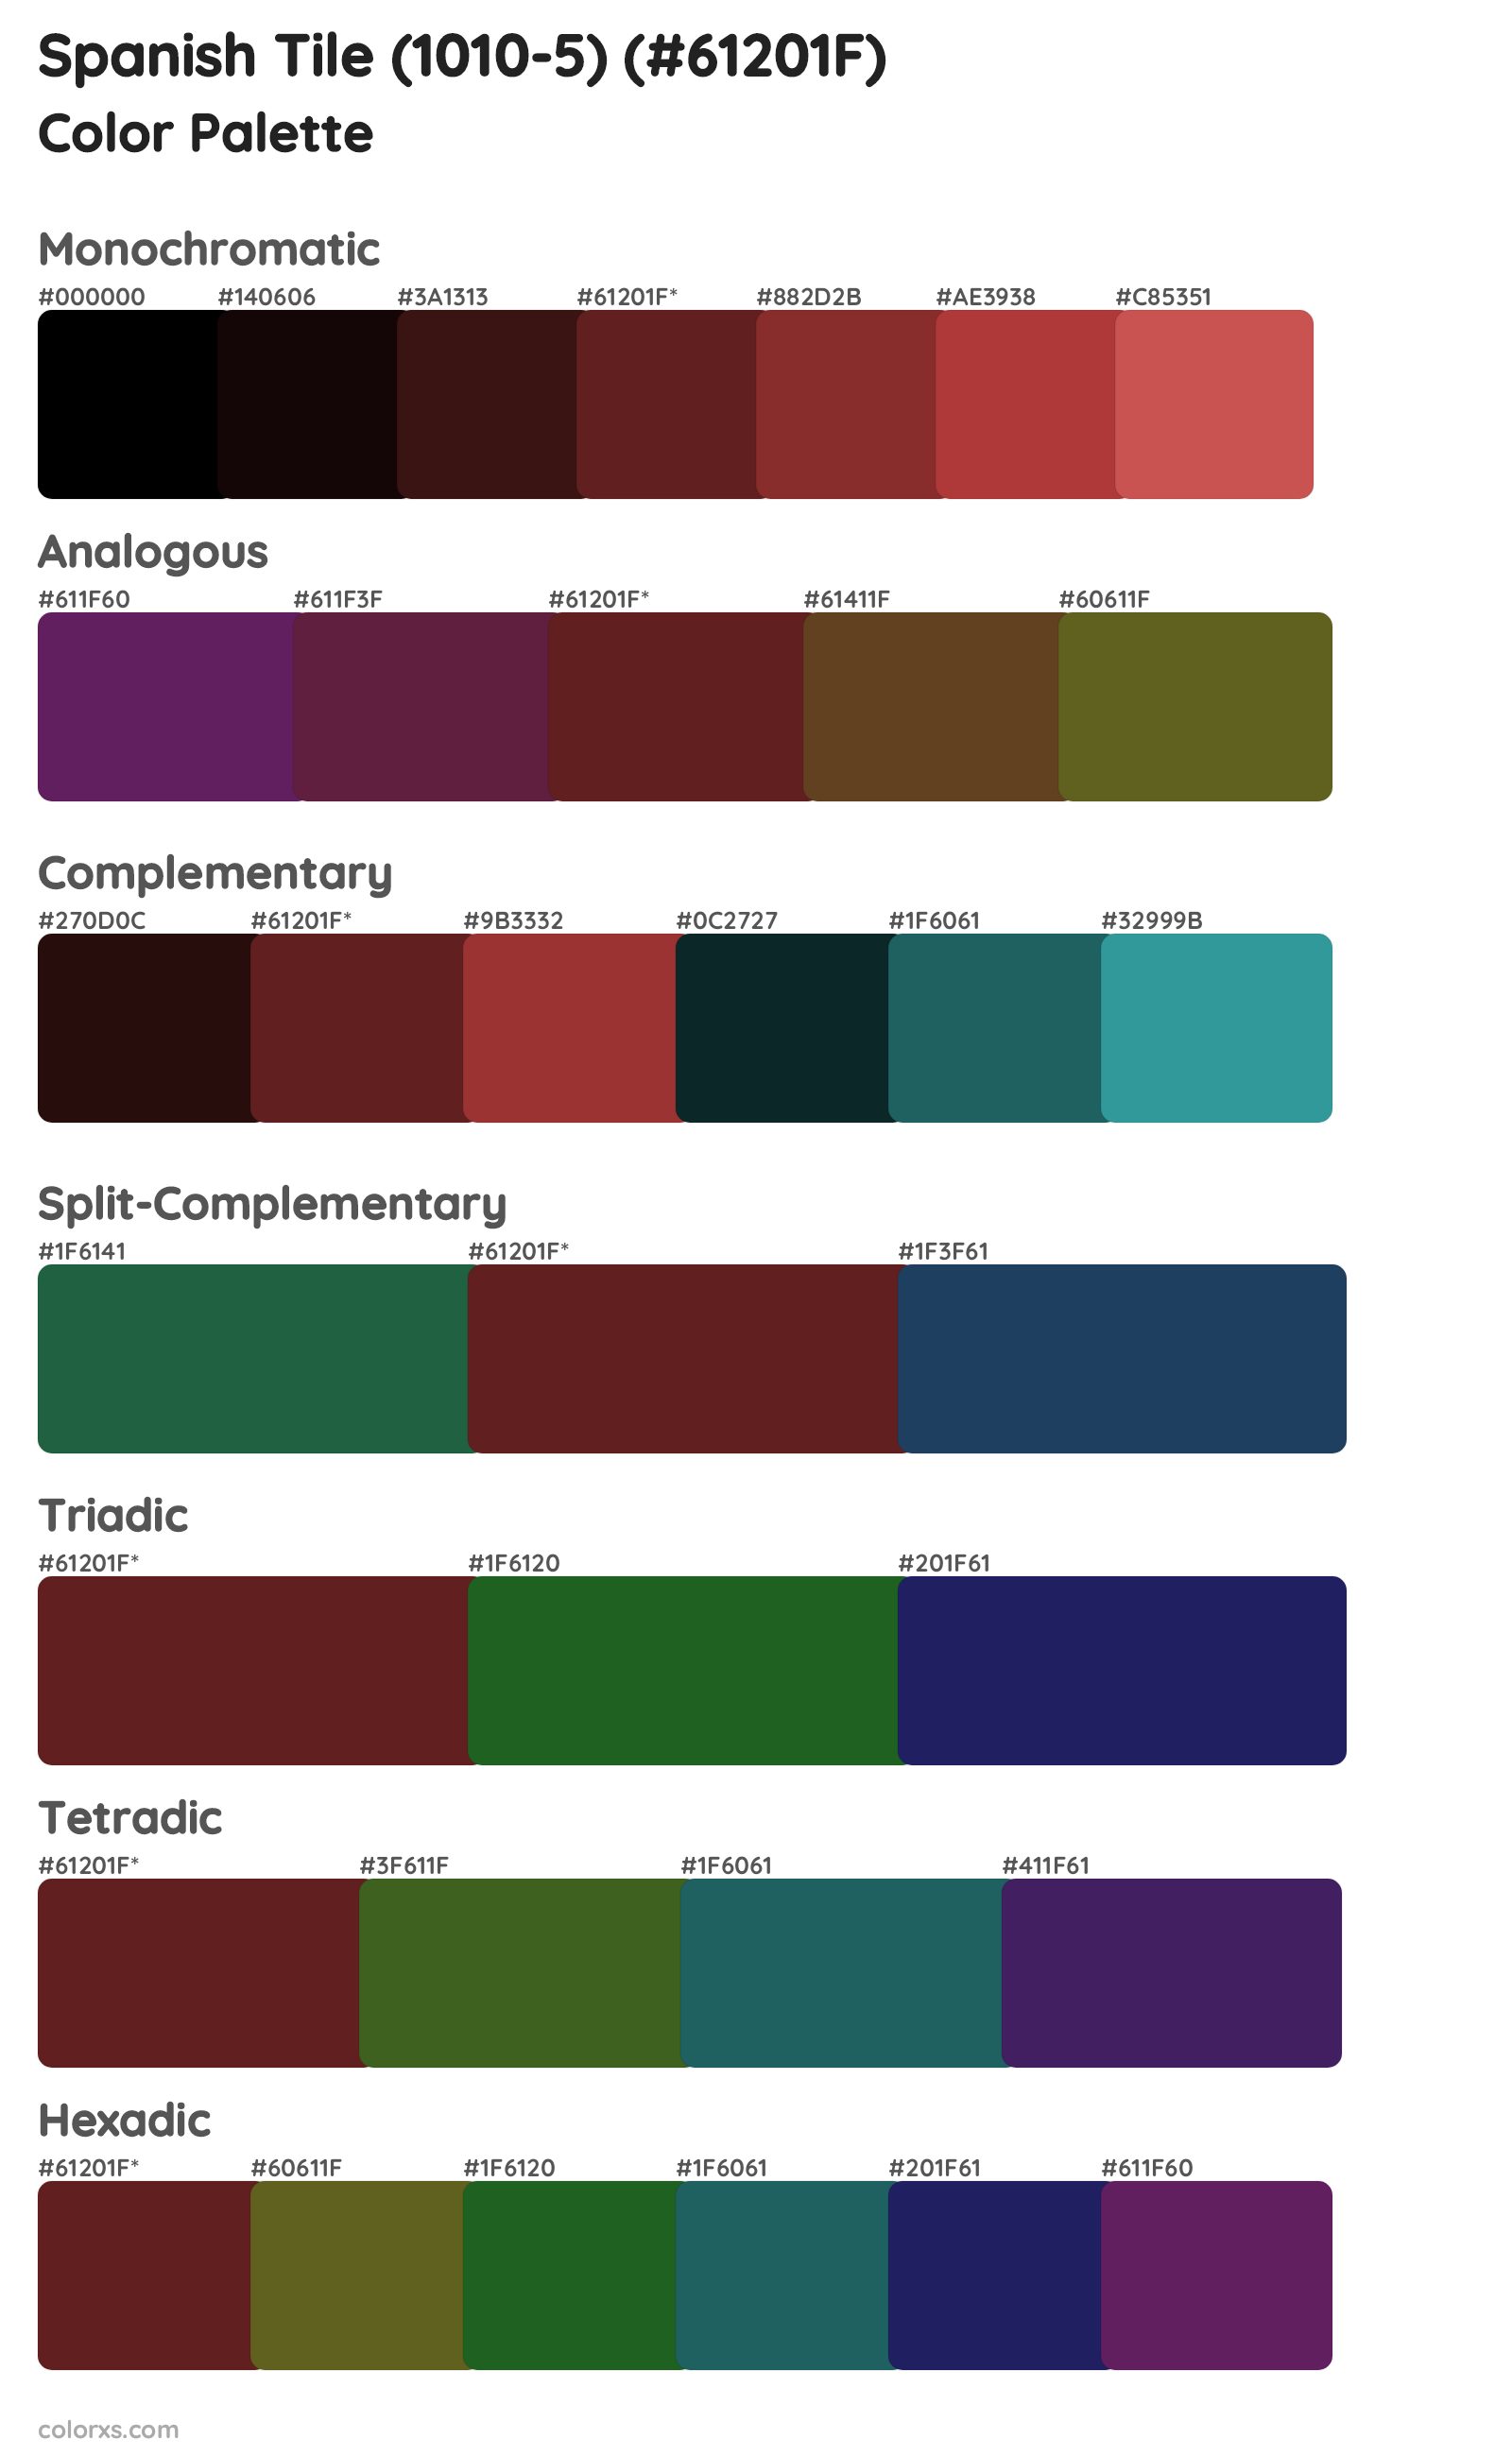 Spanish Tile (1010-5) Color Scheme Palettes